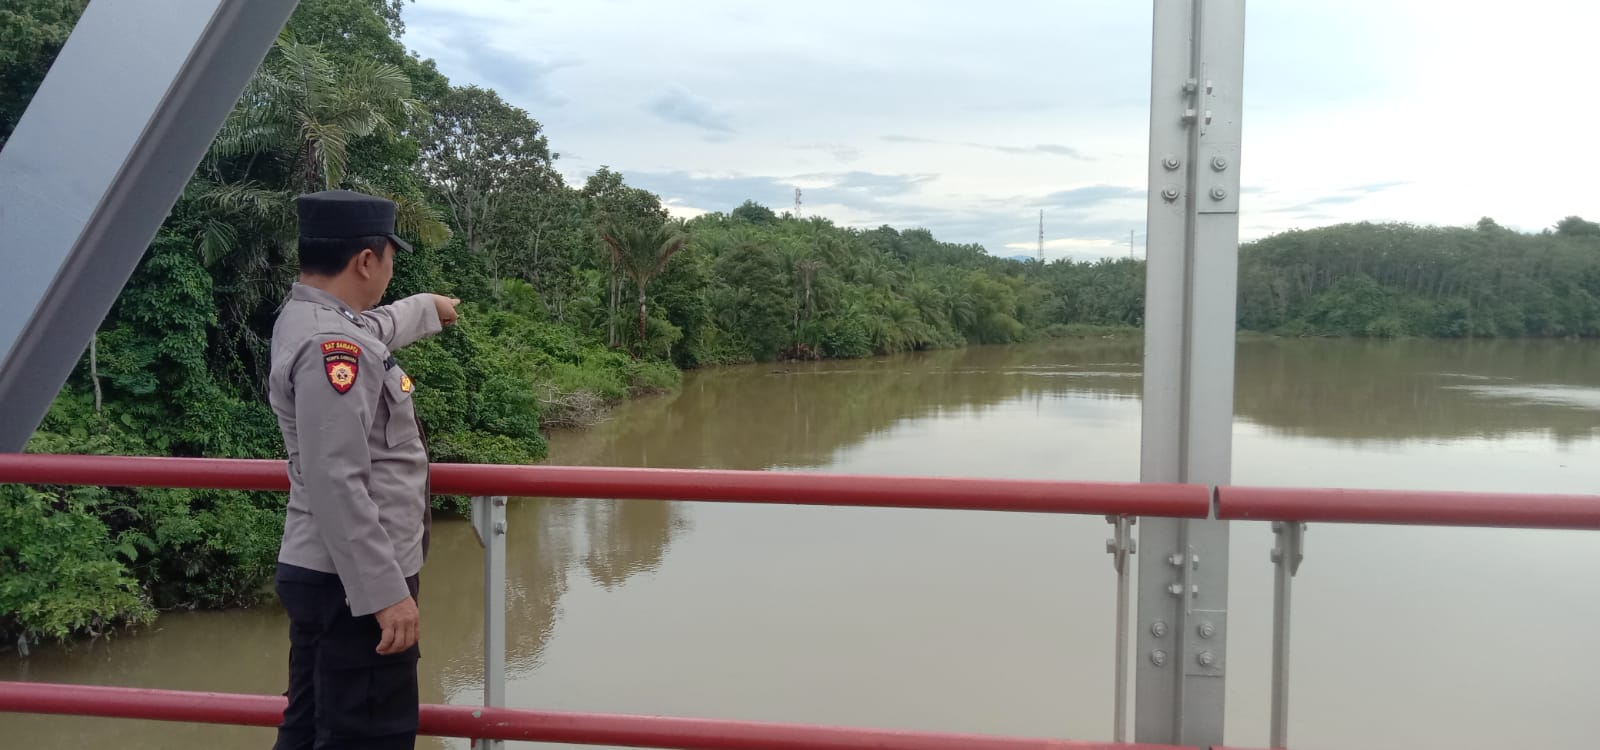 Antisipasi Banjir Kiriman dari Muara Aman Lebong, Polisi Pantau Debit Air Muara Ketahun, Begini Kondisinya